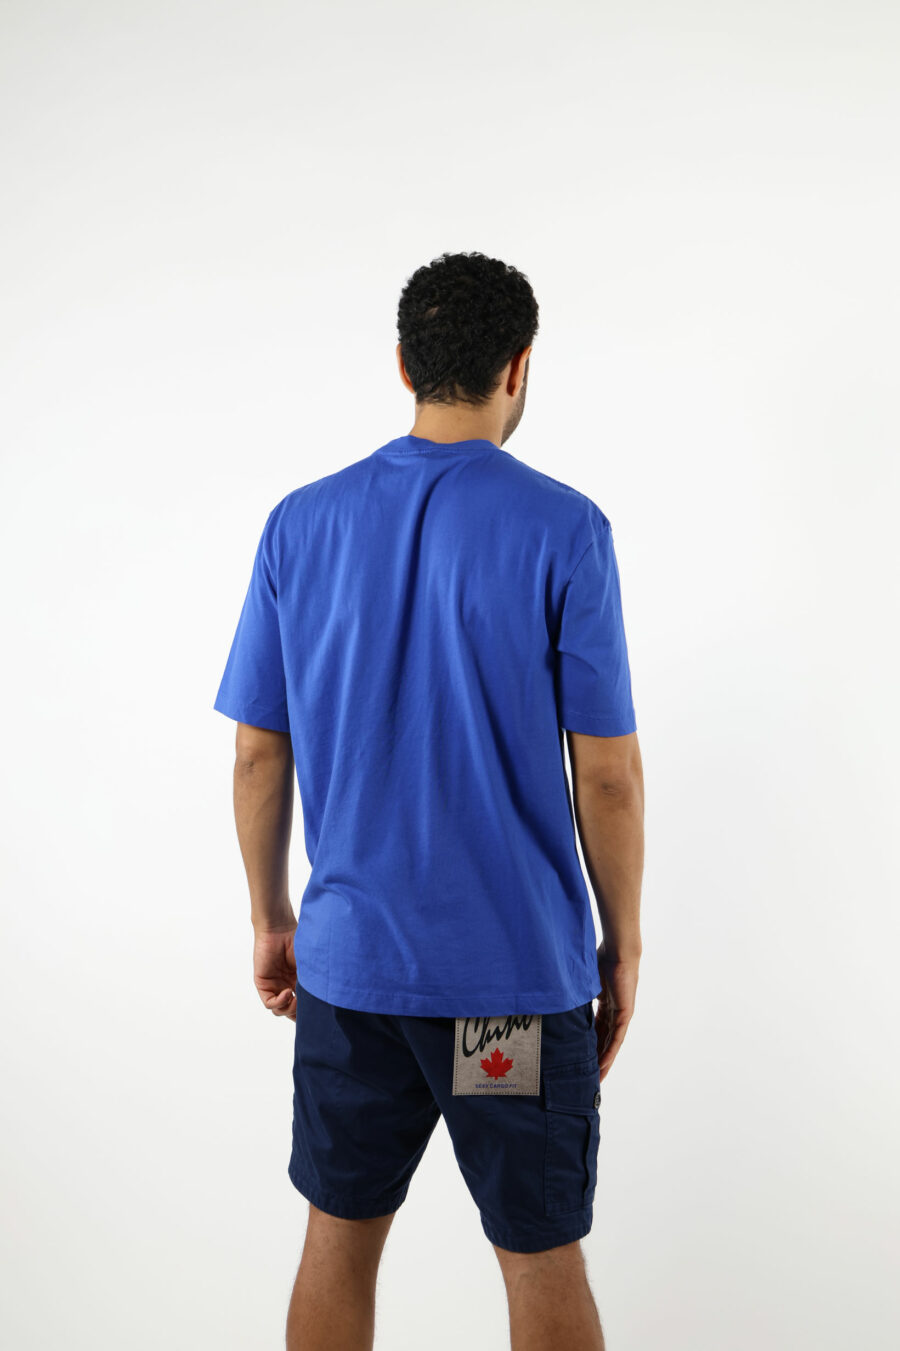 Blaues T-Shirt mit getragenem Schild Maxilogo - 111145